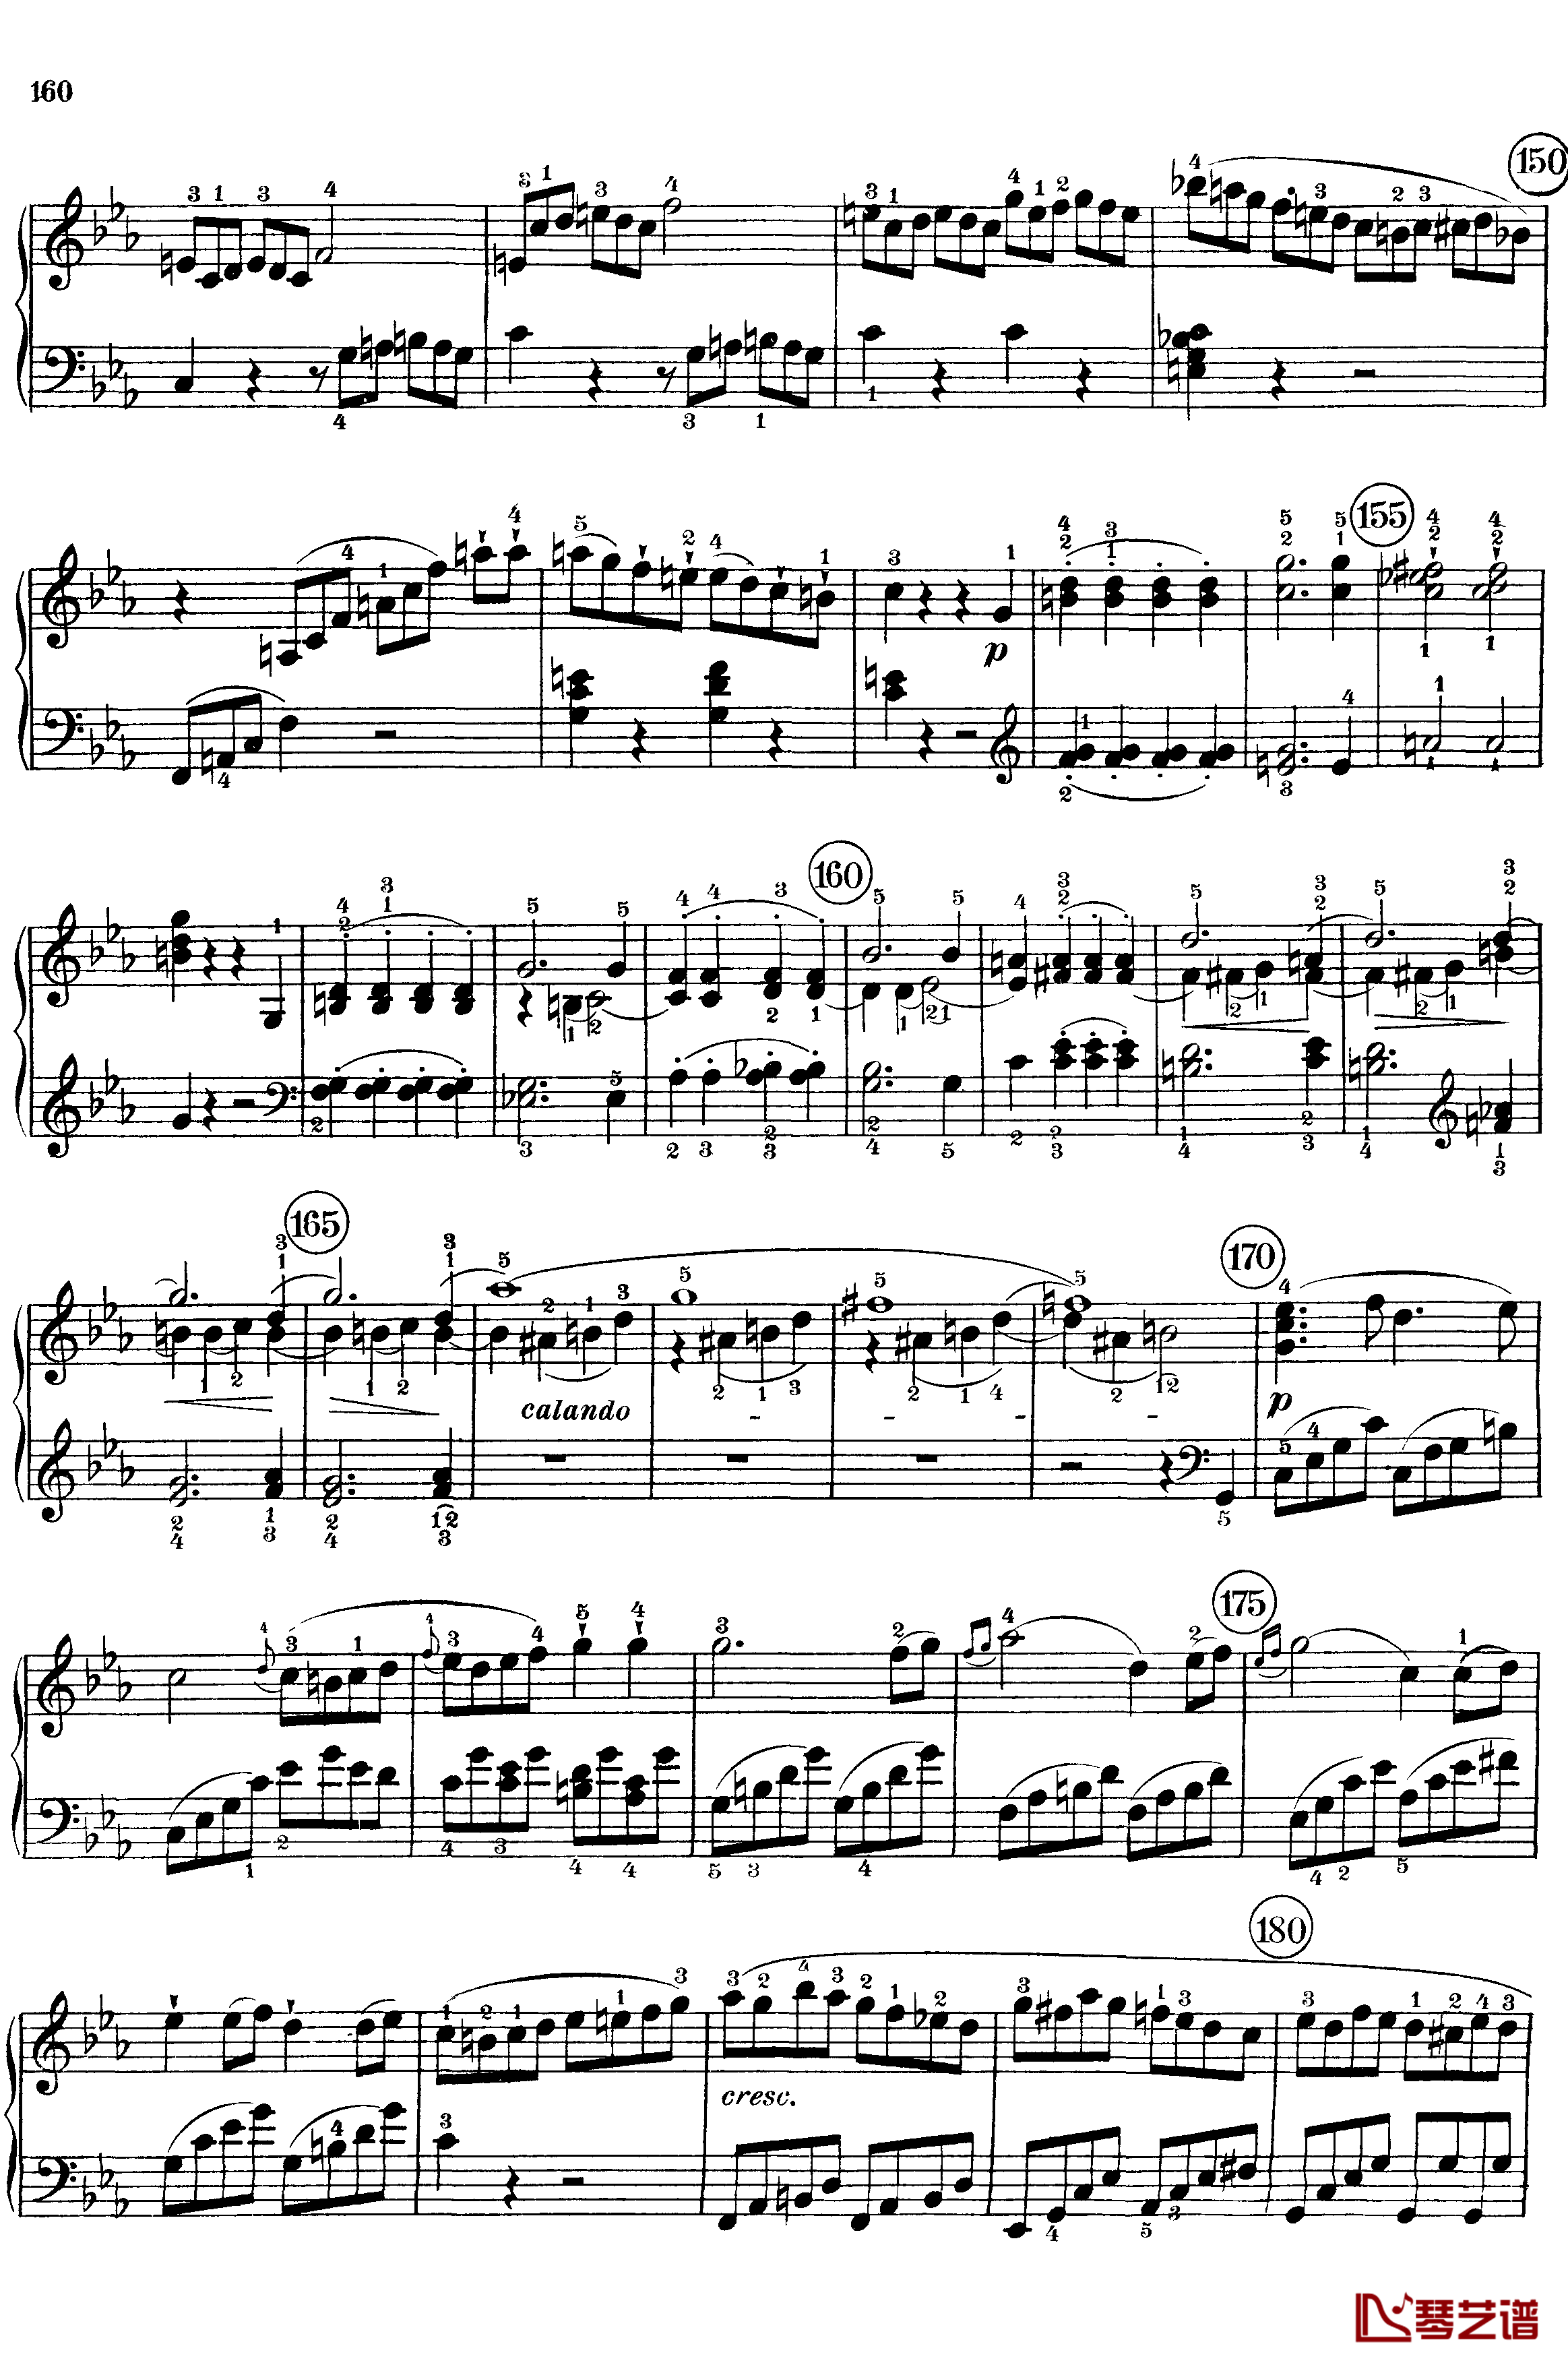 悲怆钢琴谱-c小调第八号钢琴奏鸣曲-全乐章-带指法版-贝多芬-beethoven18